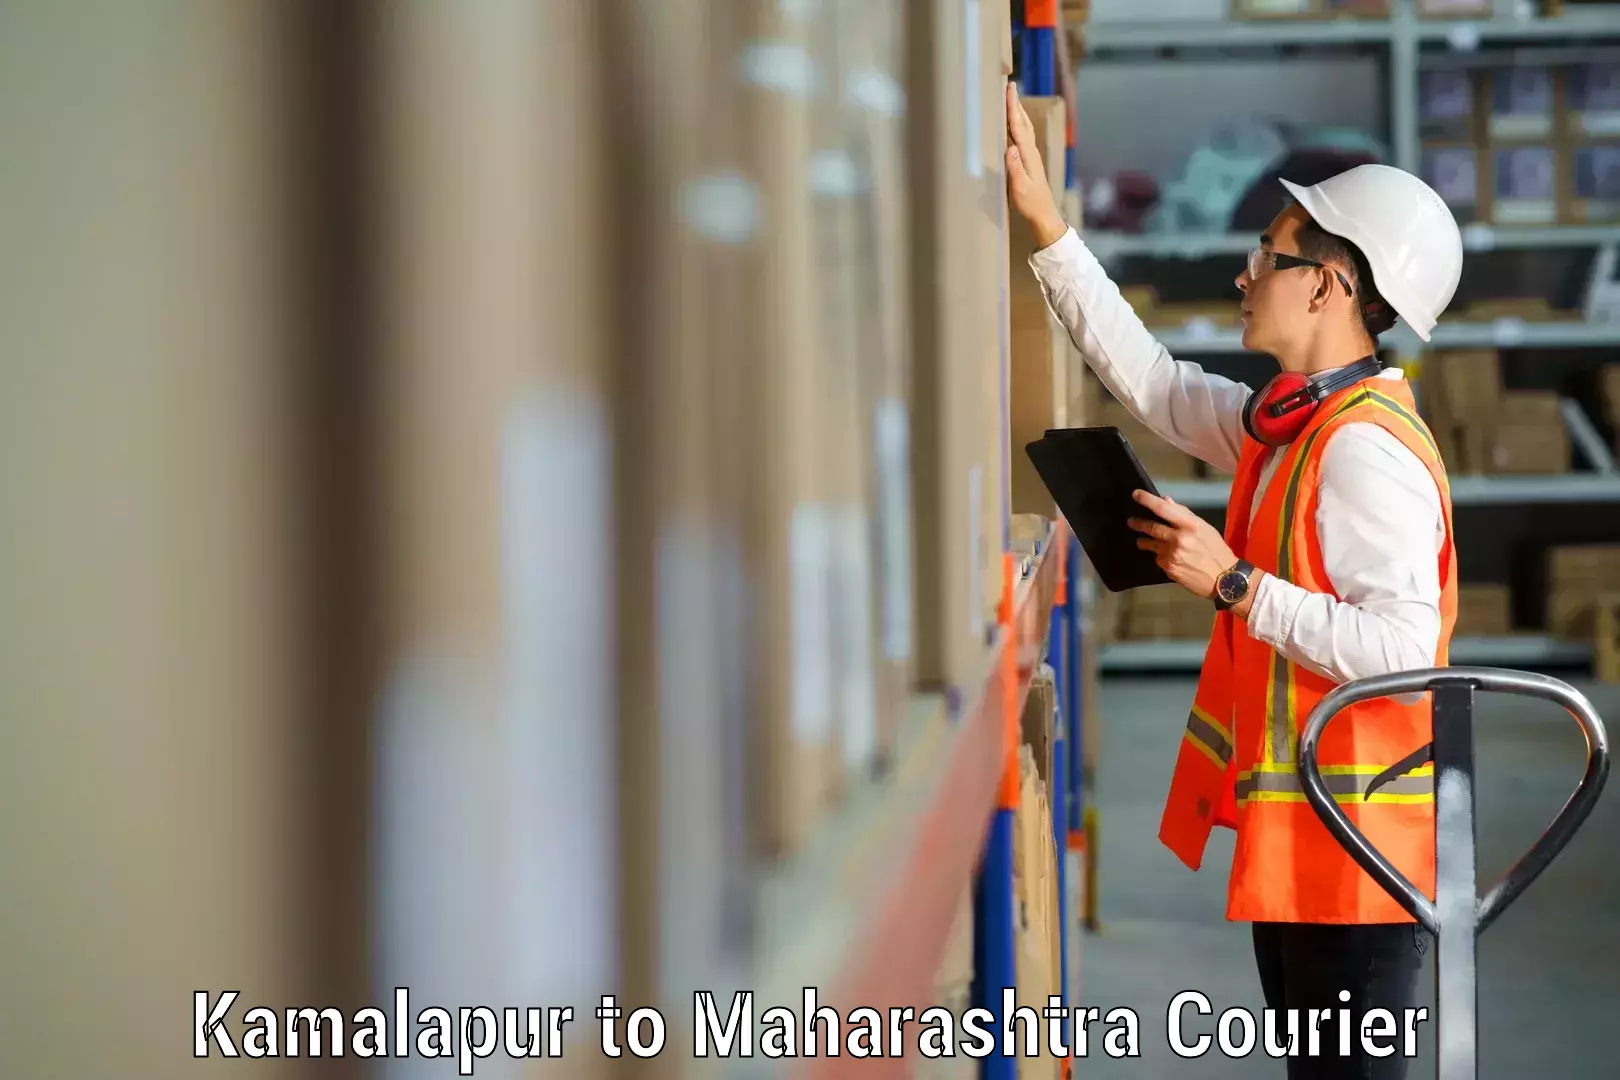 Professional moving assistance Kamalapur to Maharashtra